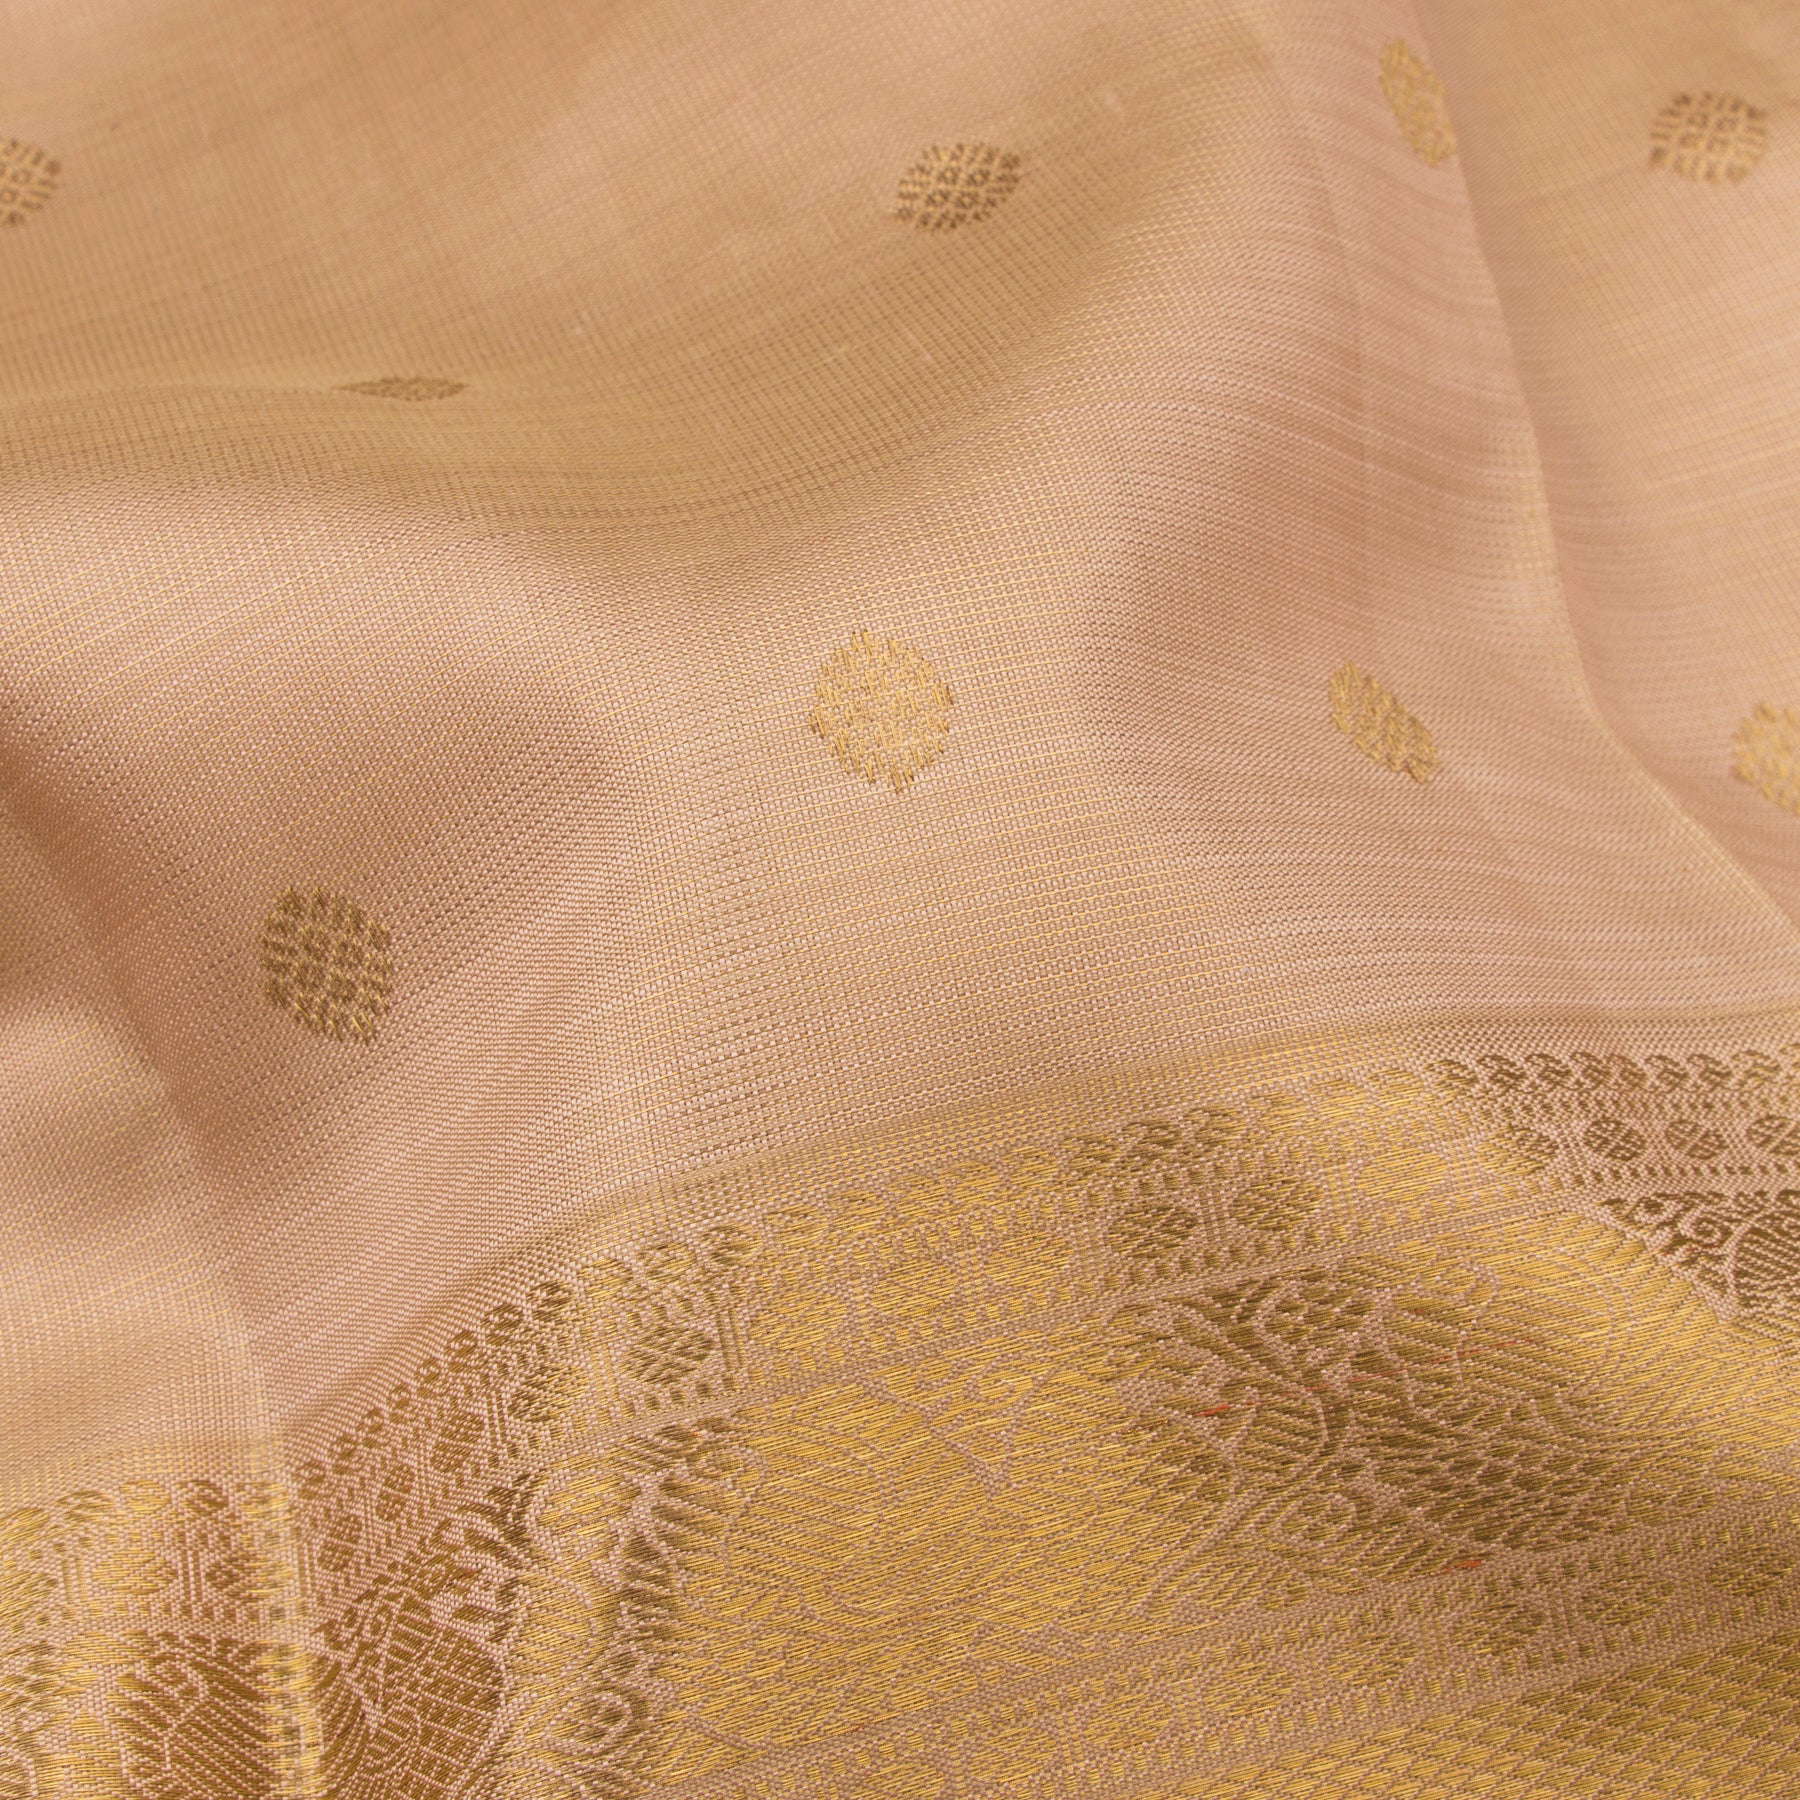 Kanakavalli Kanjivaram Silk Sari 22-110-HS001-09498 - Fabric View